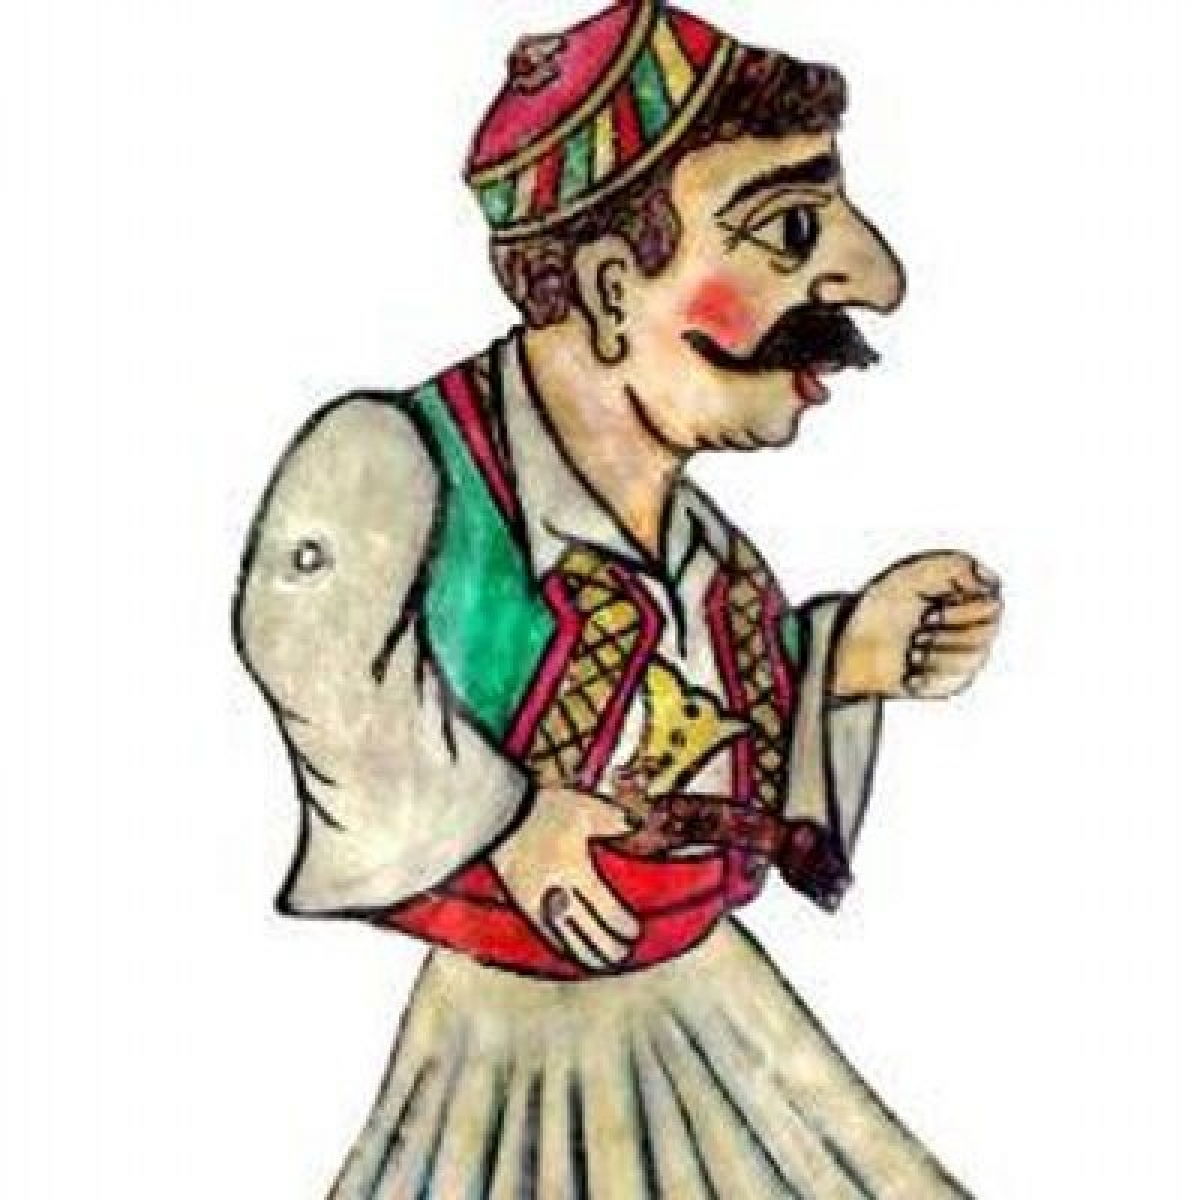 Μπαρμπαγιώργος: Ο χαρακτήρας του «Καραγκιόζη» που καθιέρωσε ο Αιτωλοακαρνάνας «Ρούλιας»